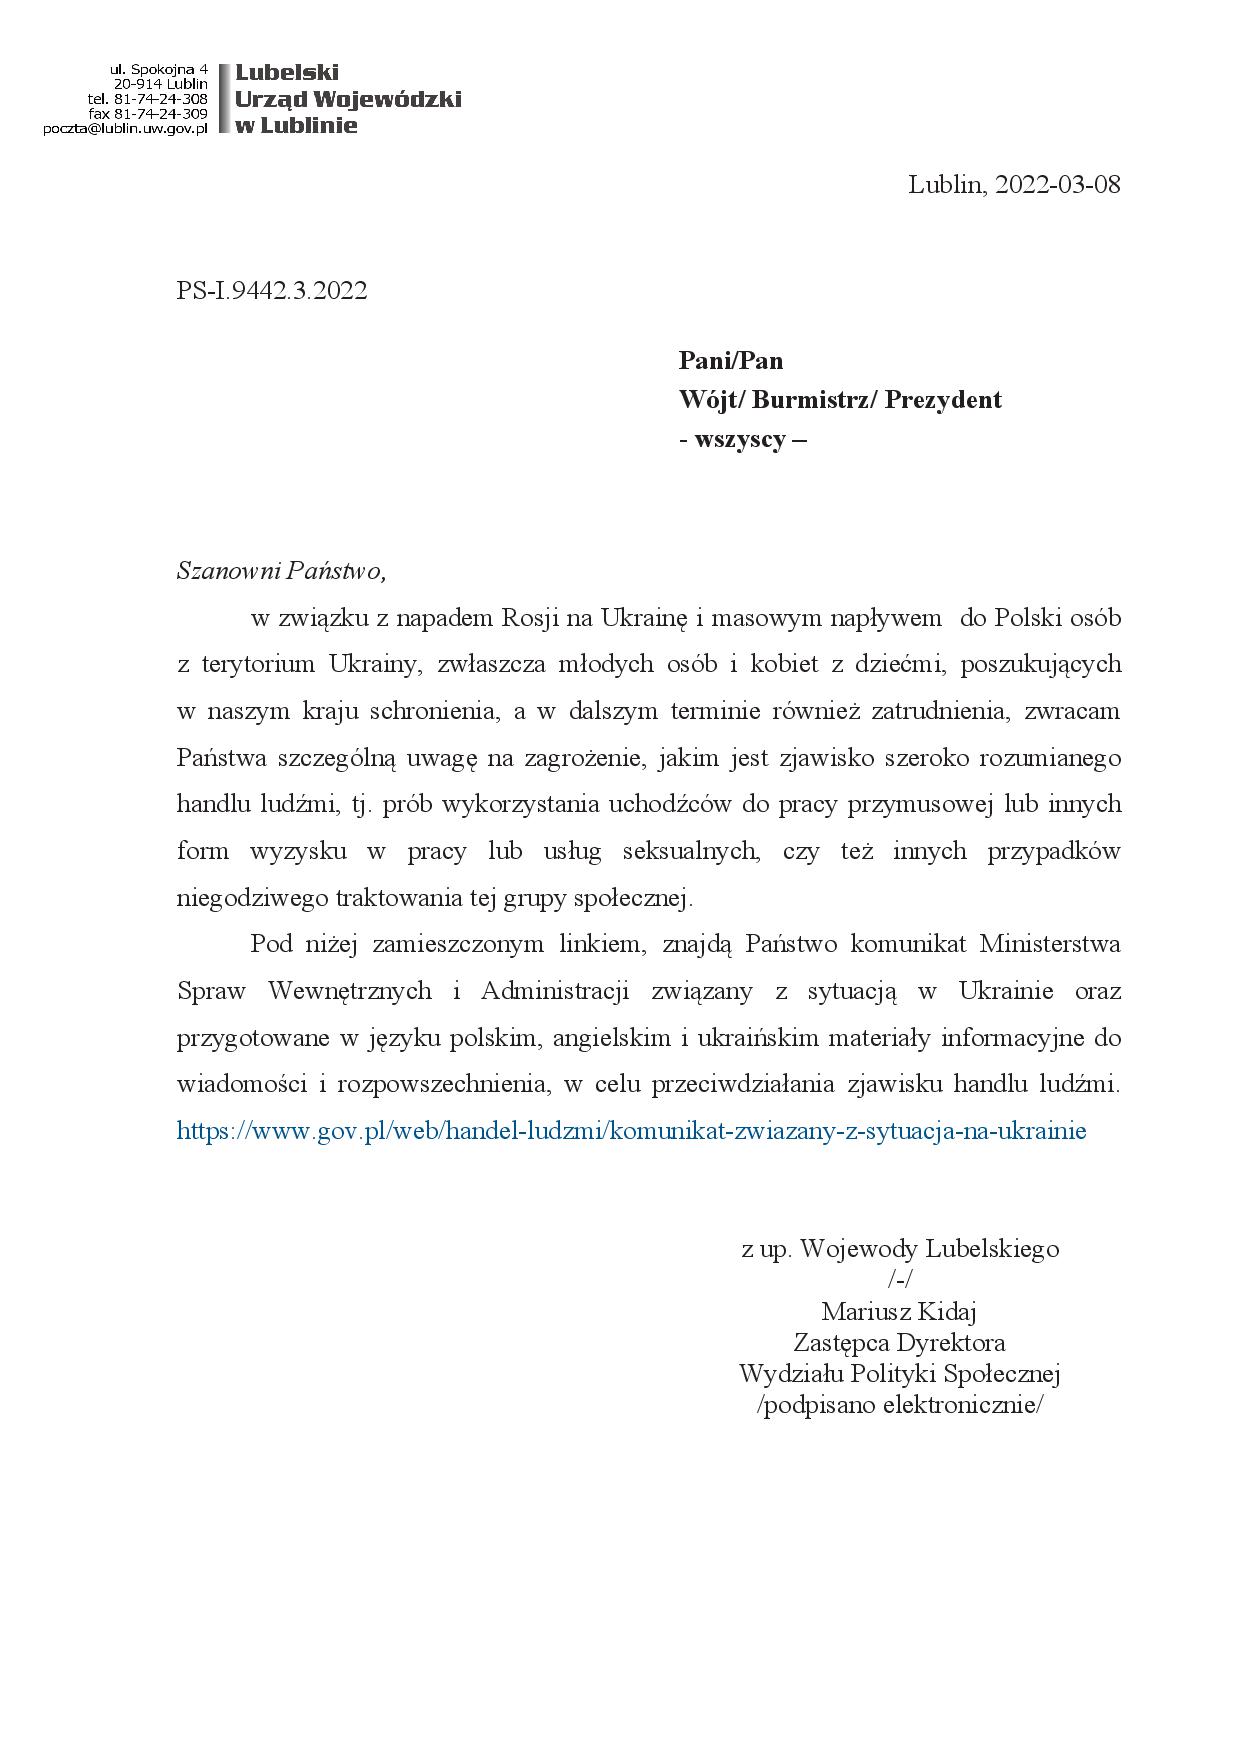 Pismo z Lubelskiego Urzędu Wojewódzkiego dot. przeciwdziałania zjawisku handlu ludźmi wśród uchodźców z Ukrainy